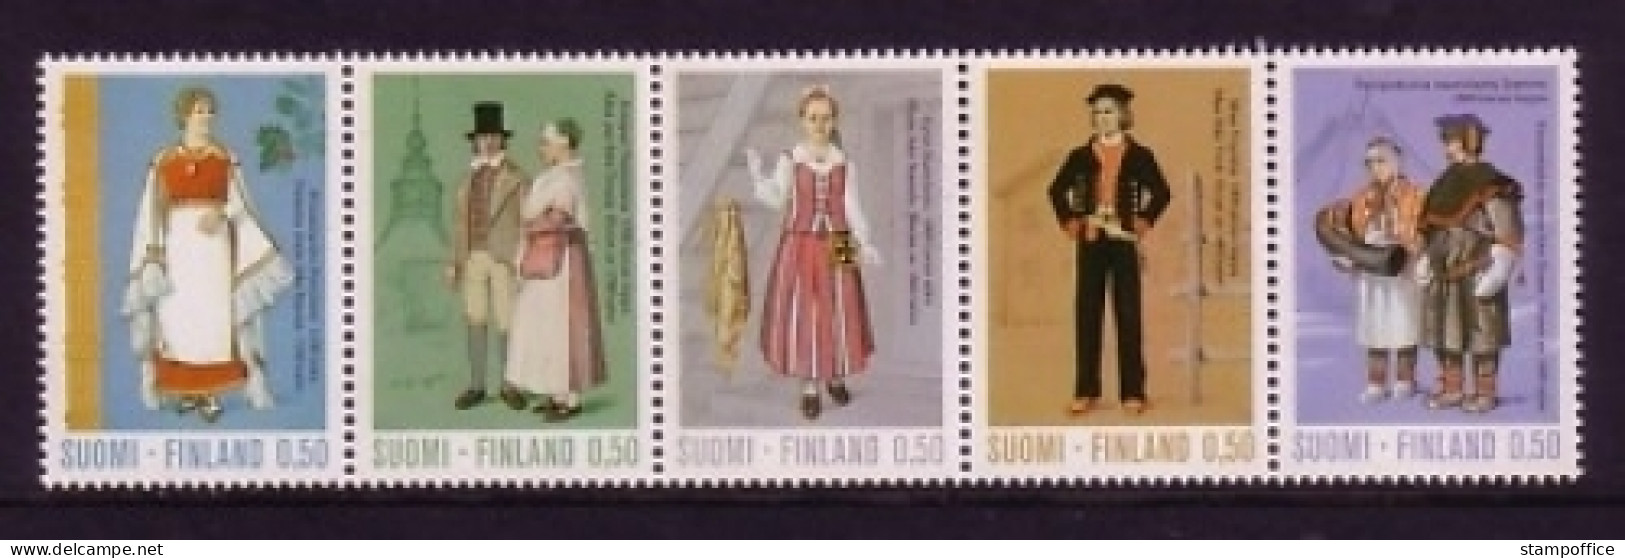 FINNLAND MI-NR. 710-714 POSTFRISCH(MINT) ZUSAMMENDRUCK UNGEFALTET TRACHTEN 1972 - Unused Stamps